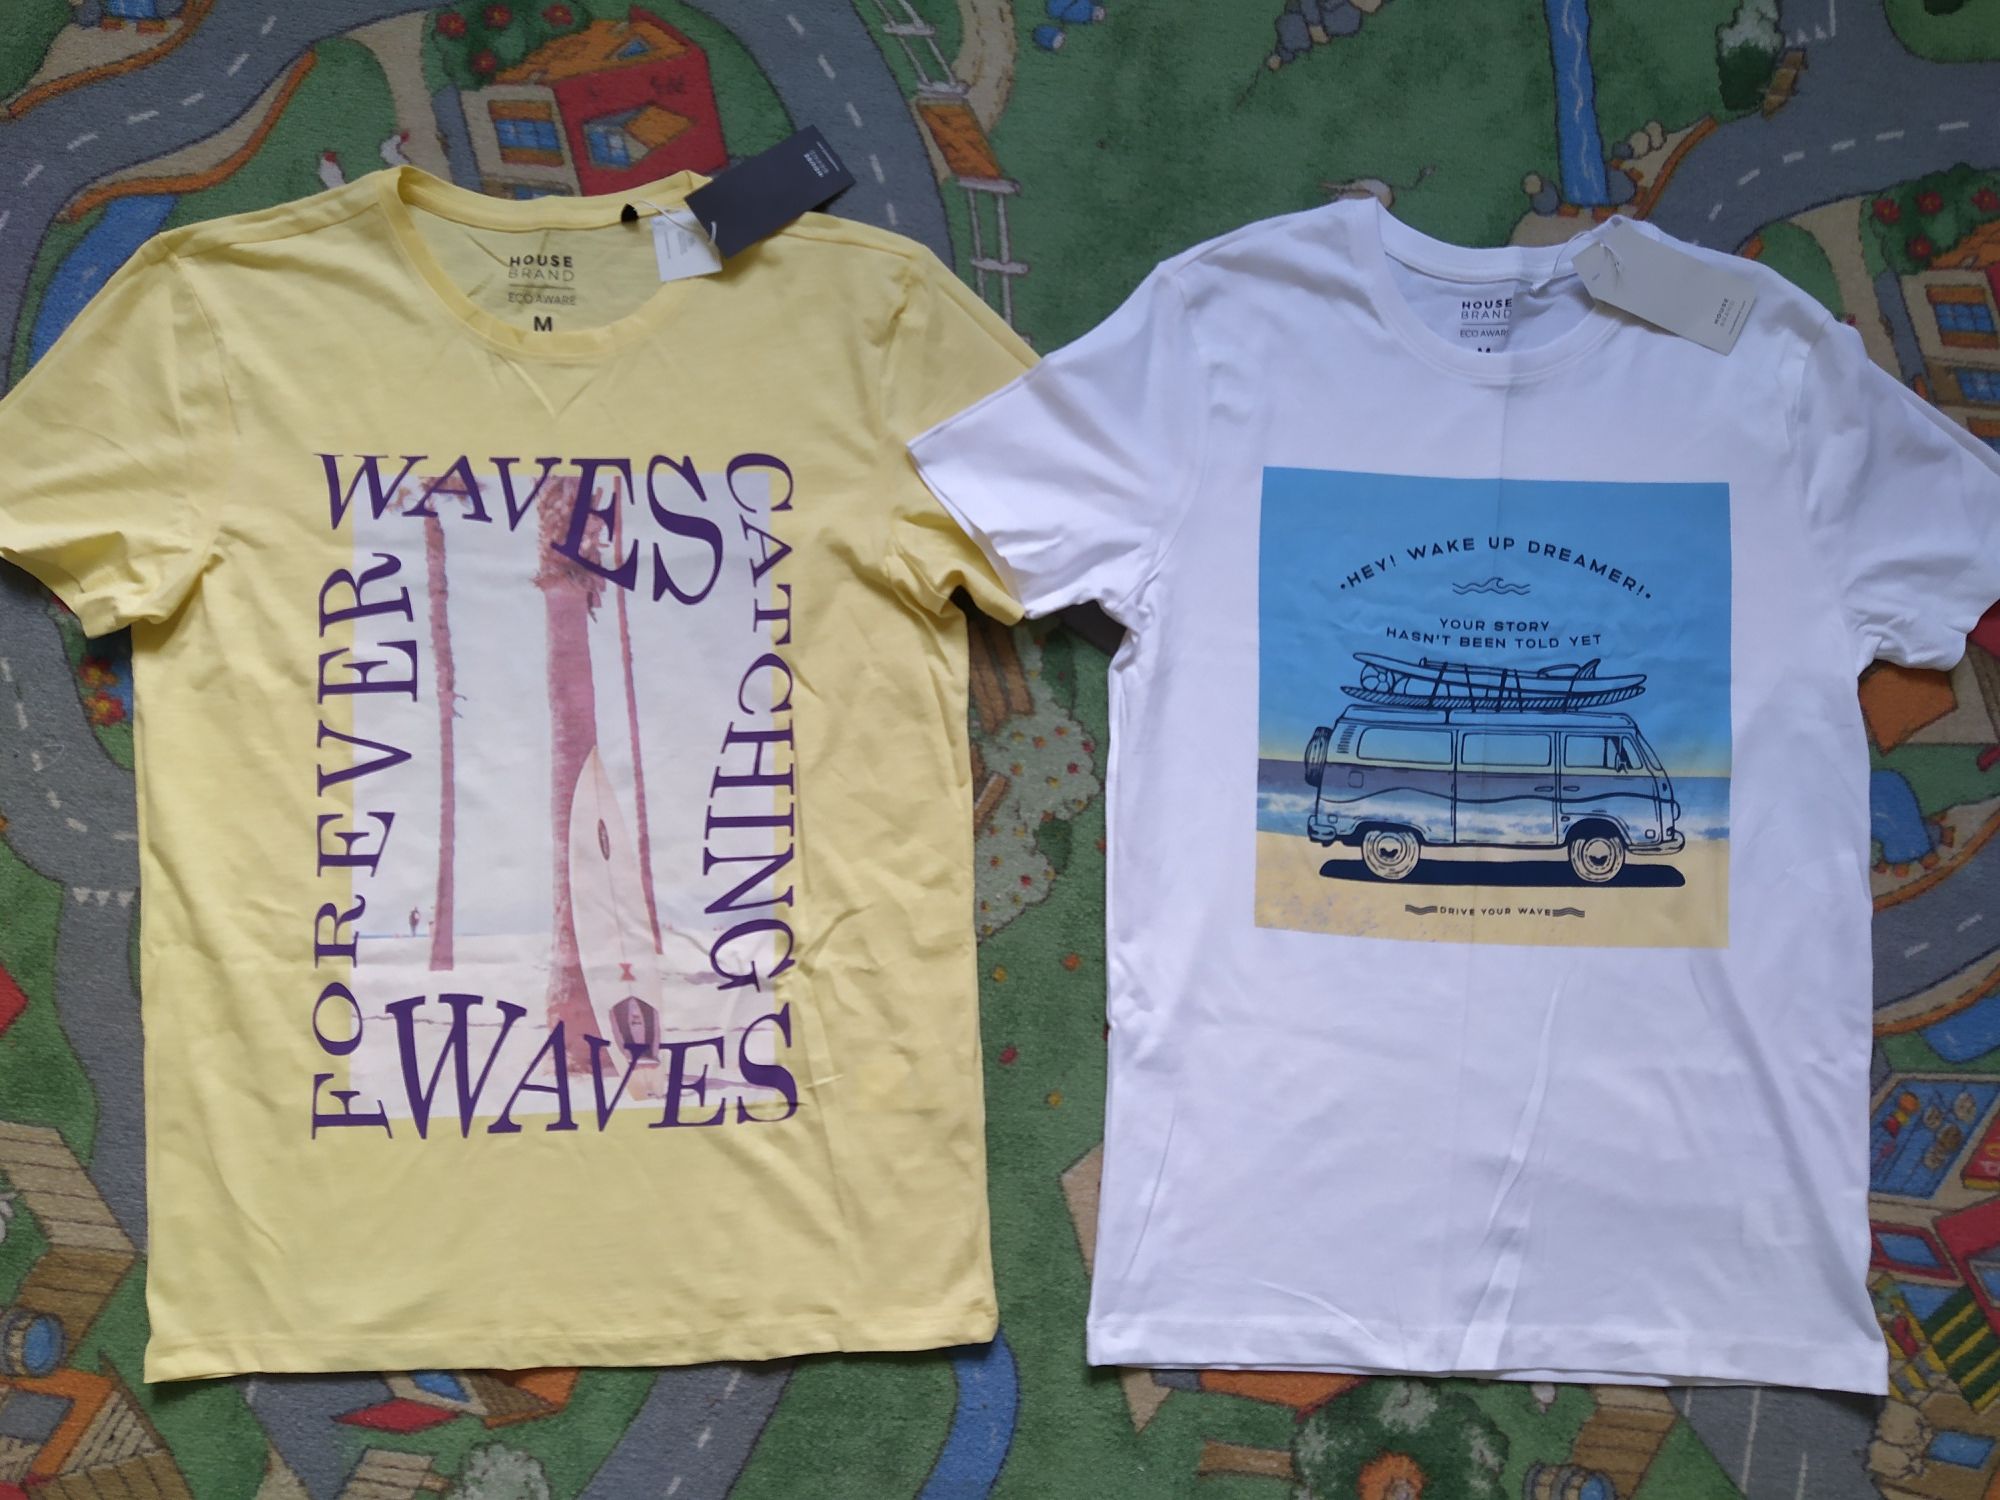 NOWE koszulki, t-shirt męskie, chłopięce, młodzieżowe - House, rozm.M  Września • OLX.pl